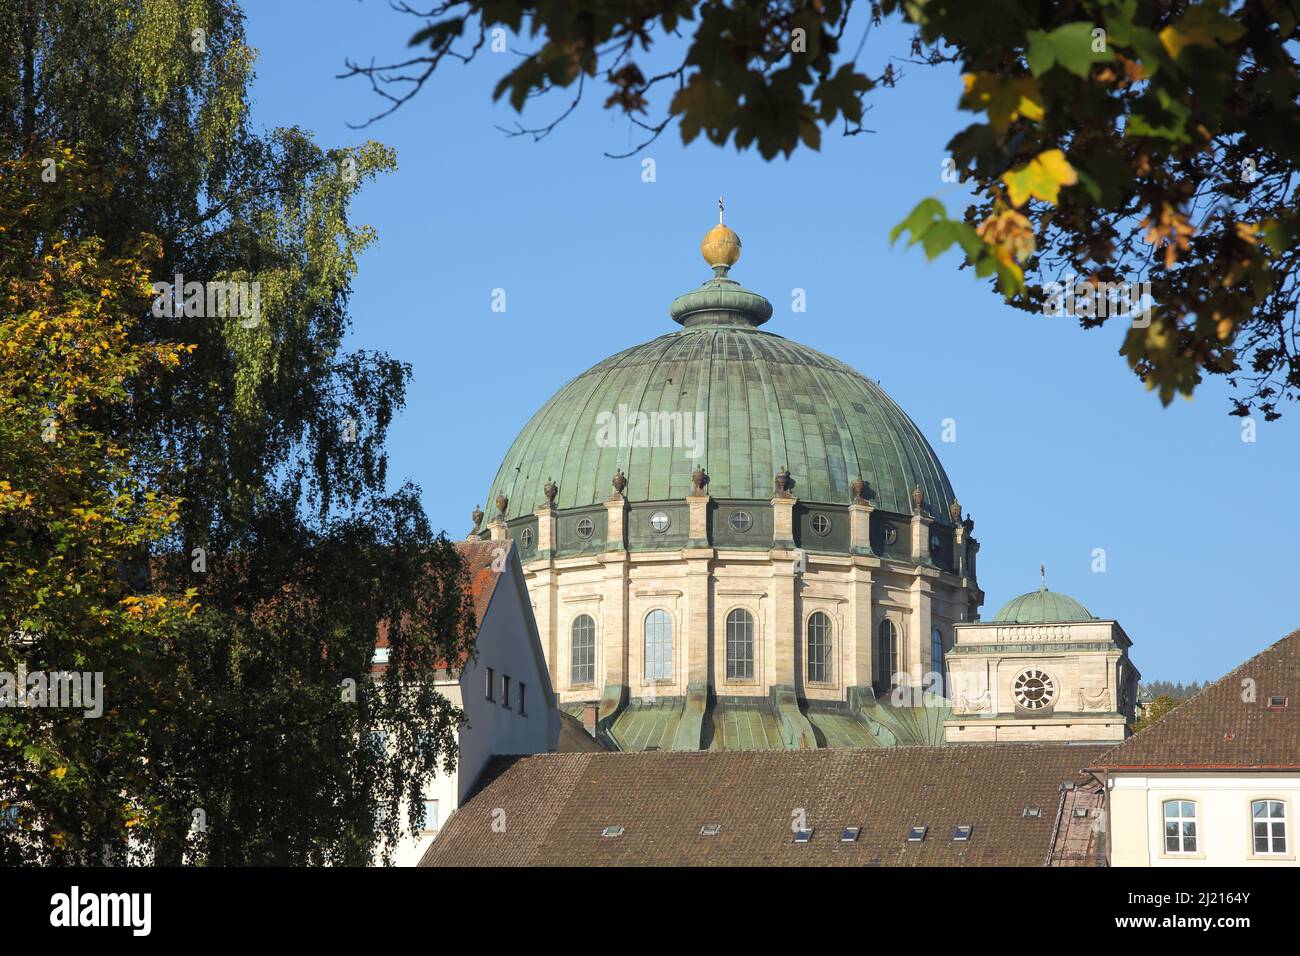 Ansicht der Kuppel vom Dom in St. Blasien, Baden-Württemberg, Deutschland  Stockfotografie - Alamy